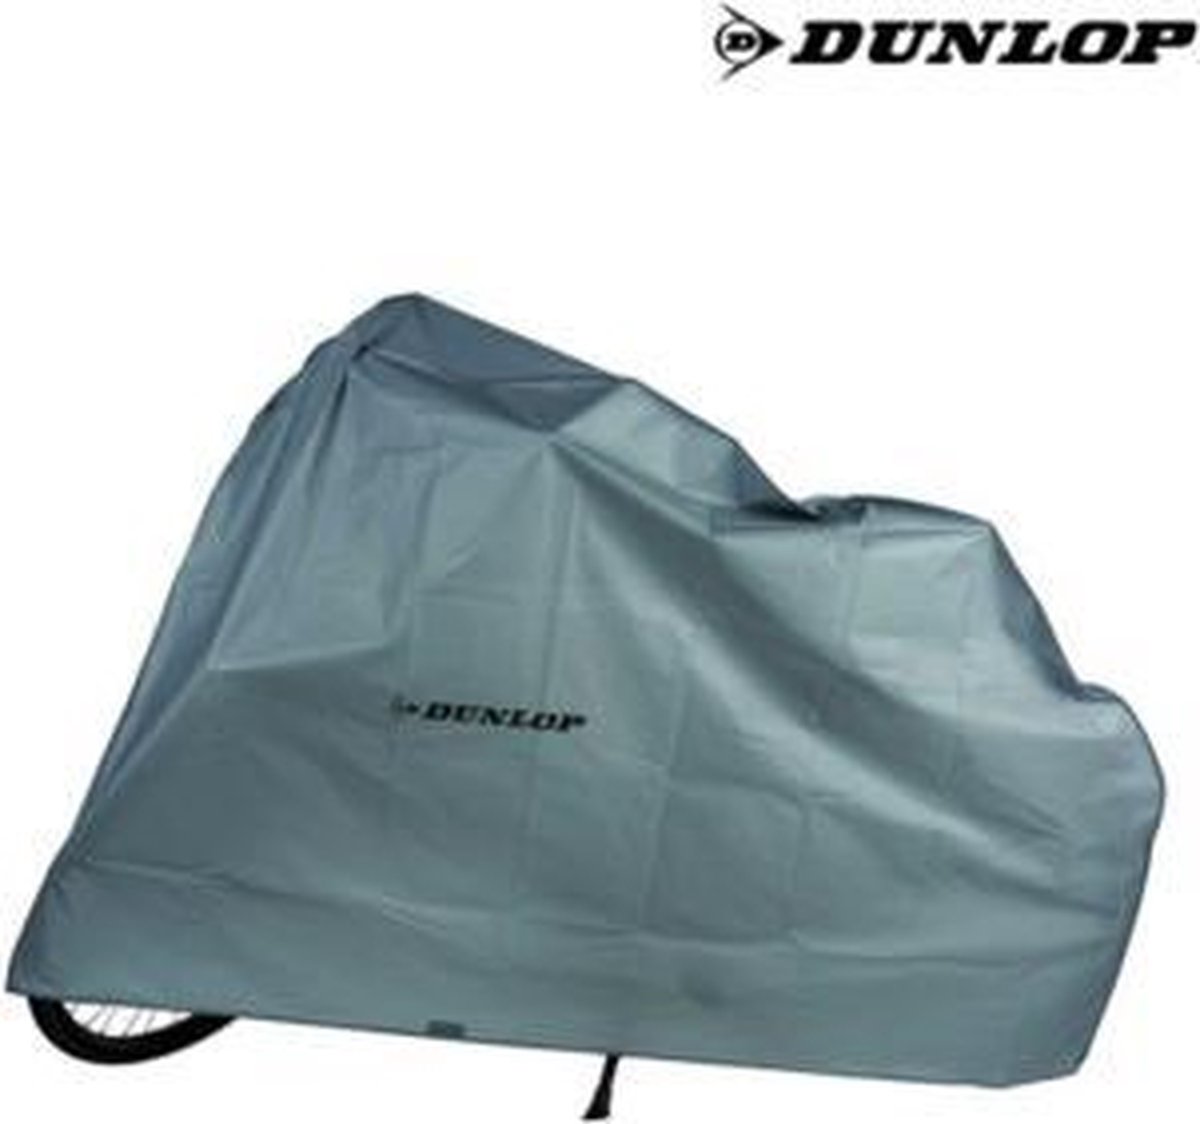 Dunlop Motorhoes - M - Voor Buiten | Motor Hoes | Motorcycle cover